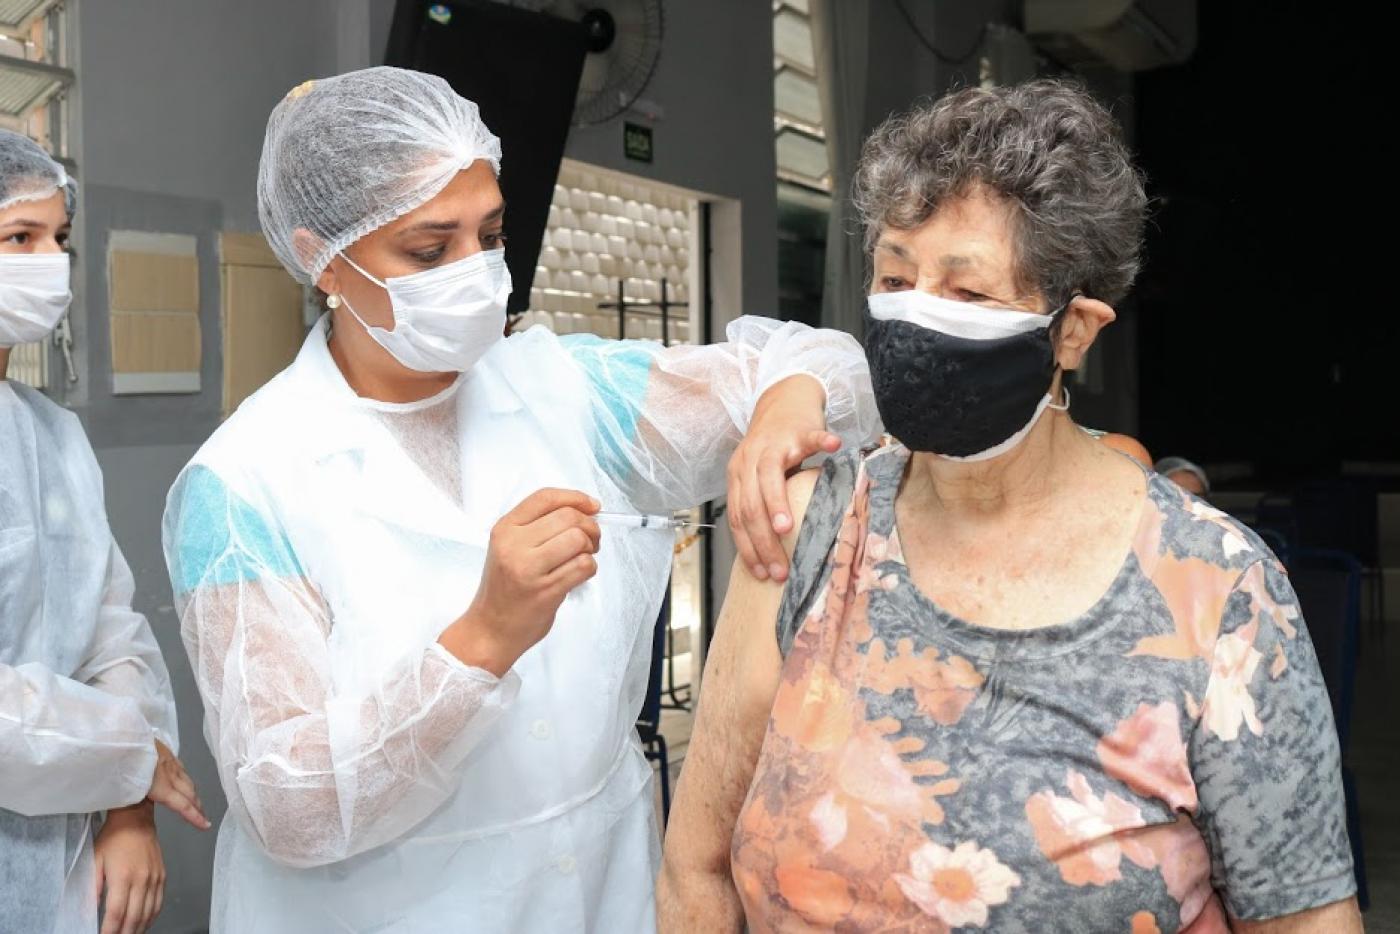 idosa é vacinada no braço #paratodosverem 